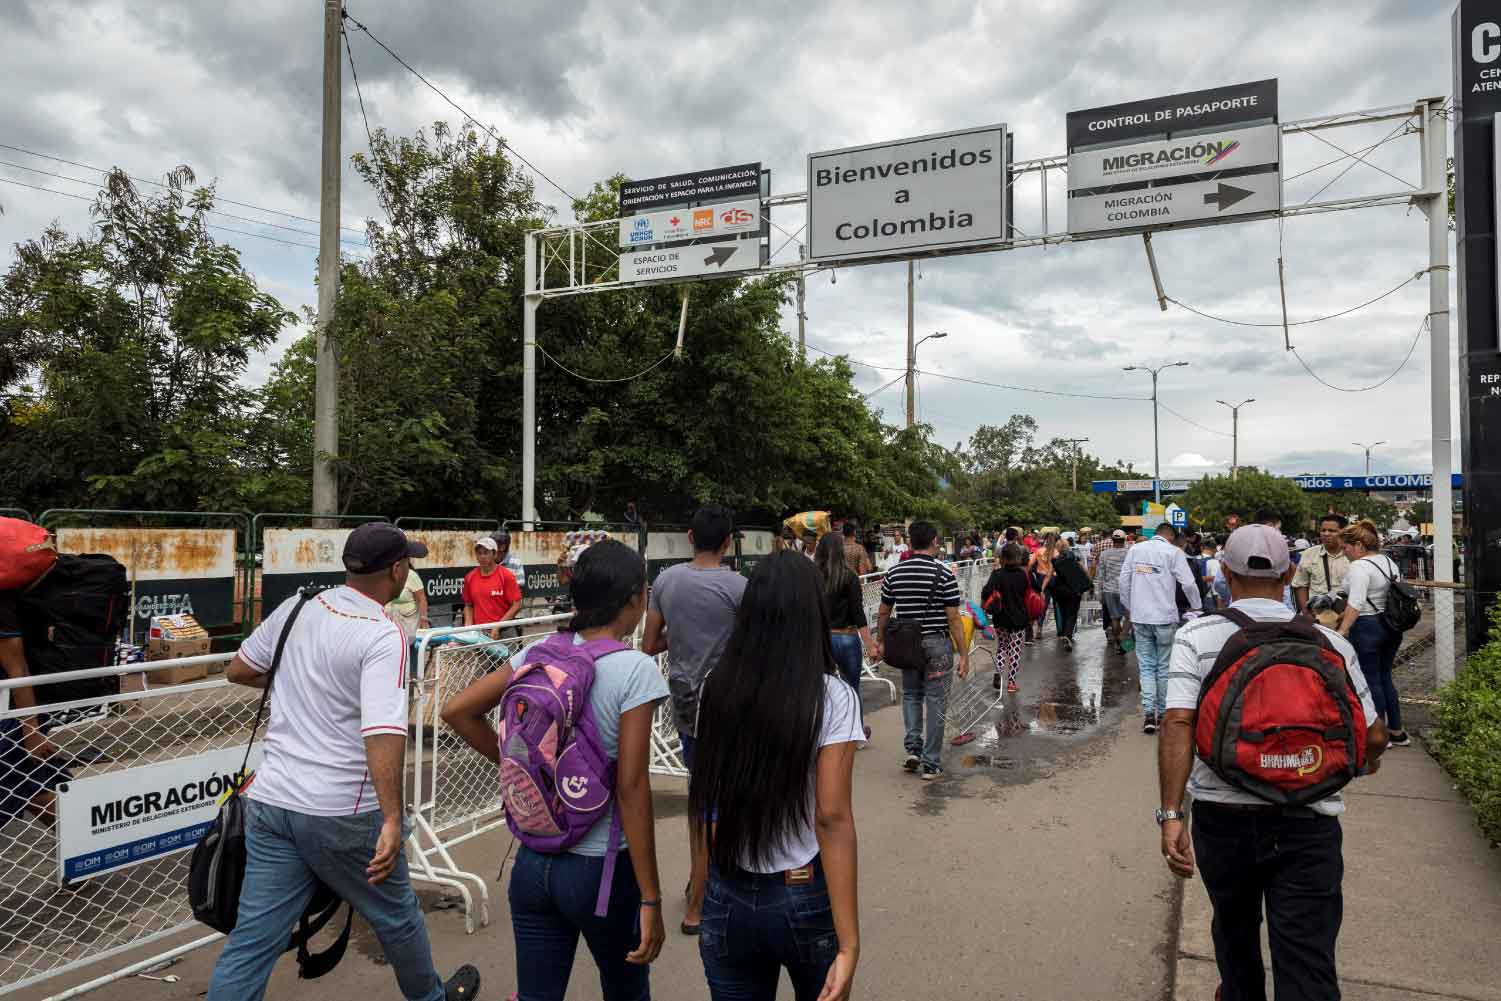 Imagen noticia 7 mil colombianos podrían ser deportados o retornados de Venezuela